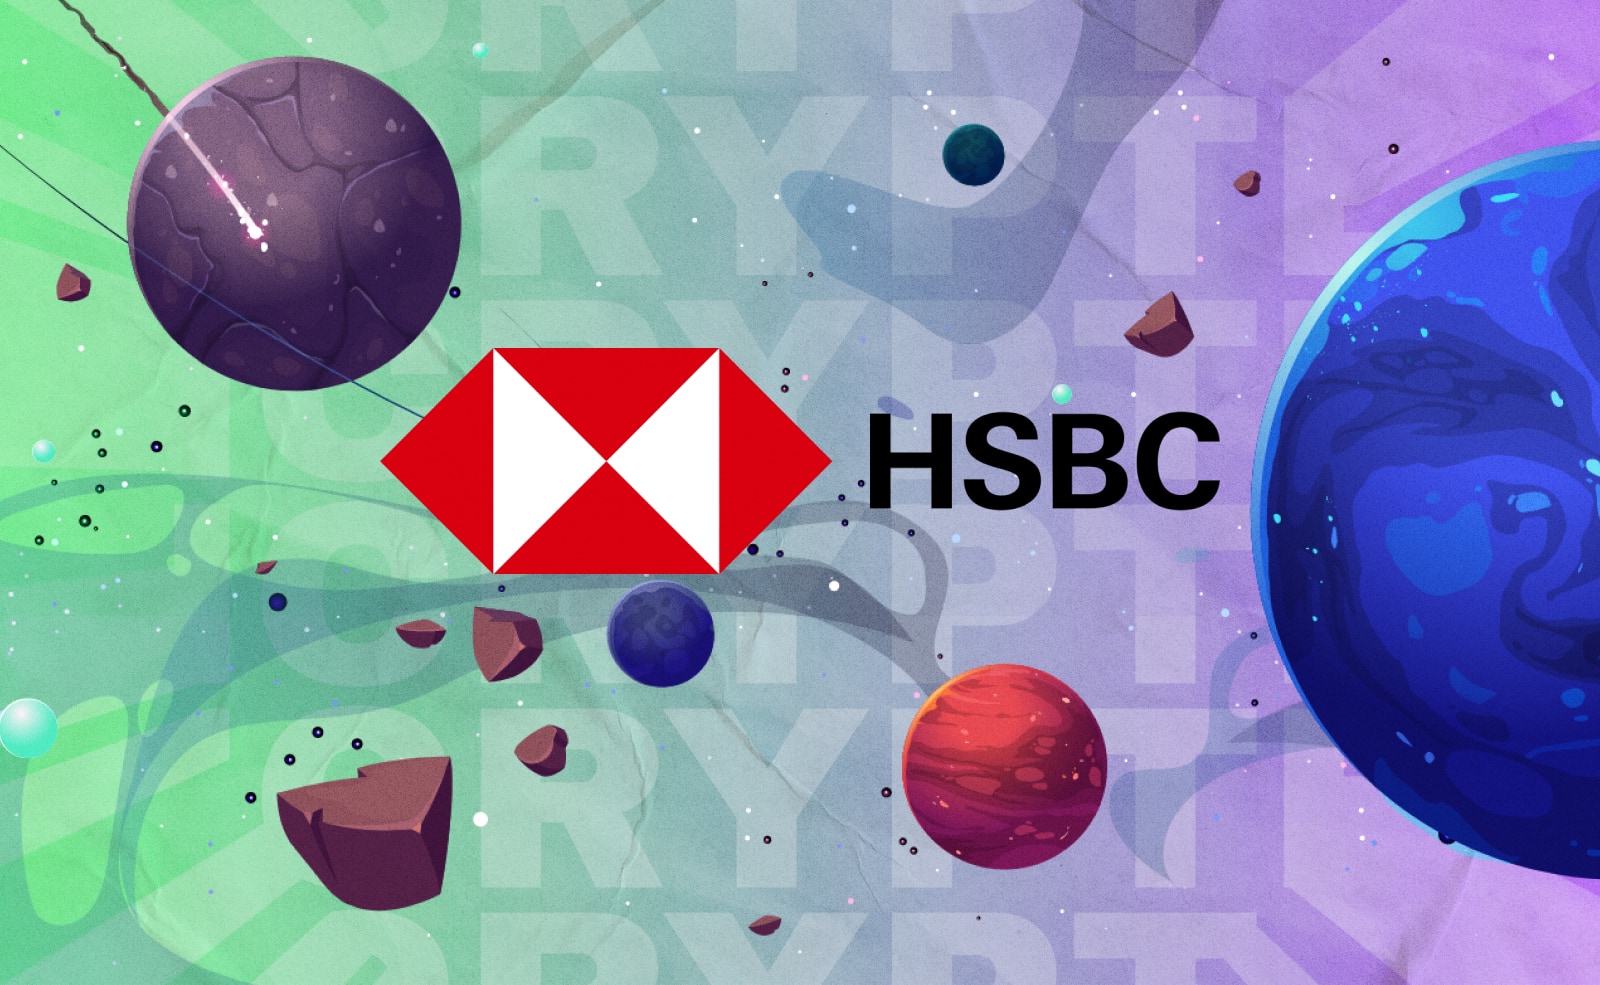 Британский финансовый гигант HSBC подал заявки на регистрацию товарных знаков в метавселенных для своего бренда и логотипа.